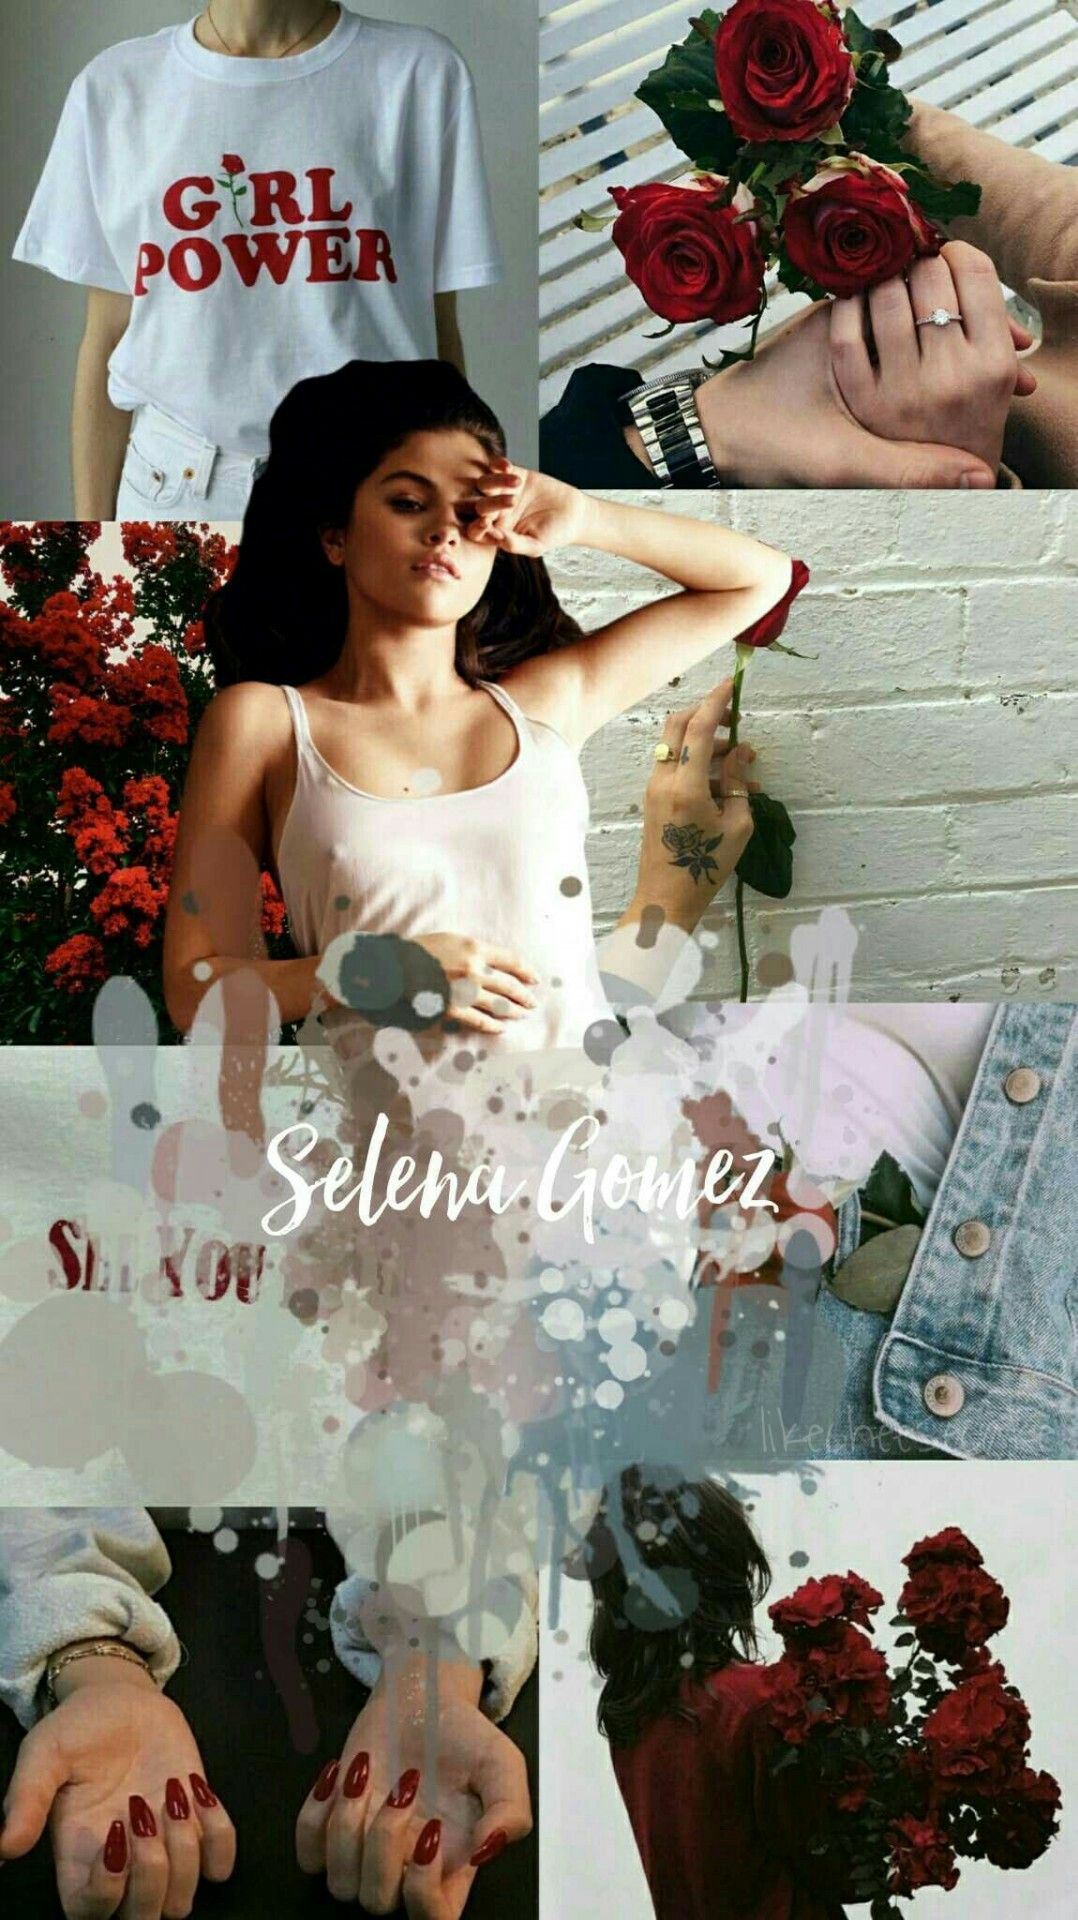 Selena Gomez aesthetic wallpaper. Selena gomez